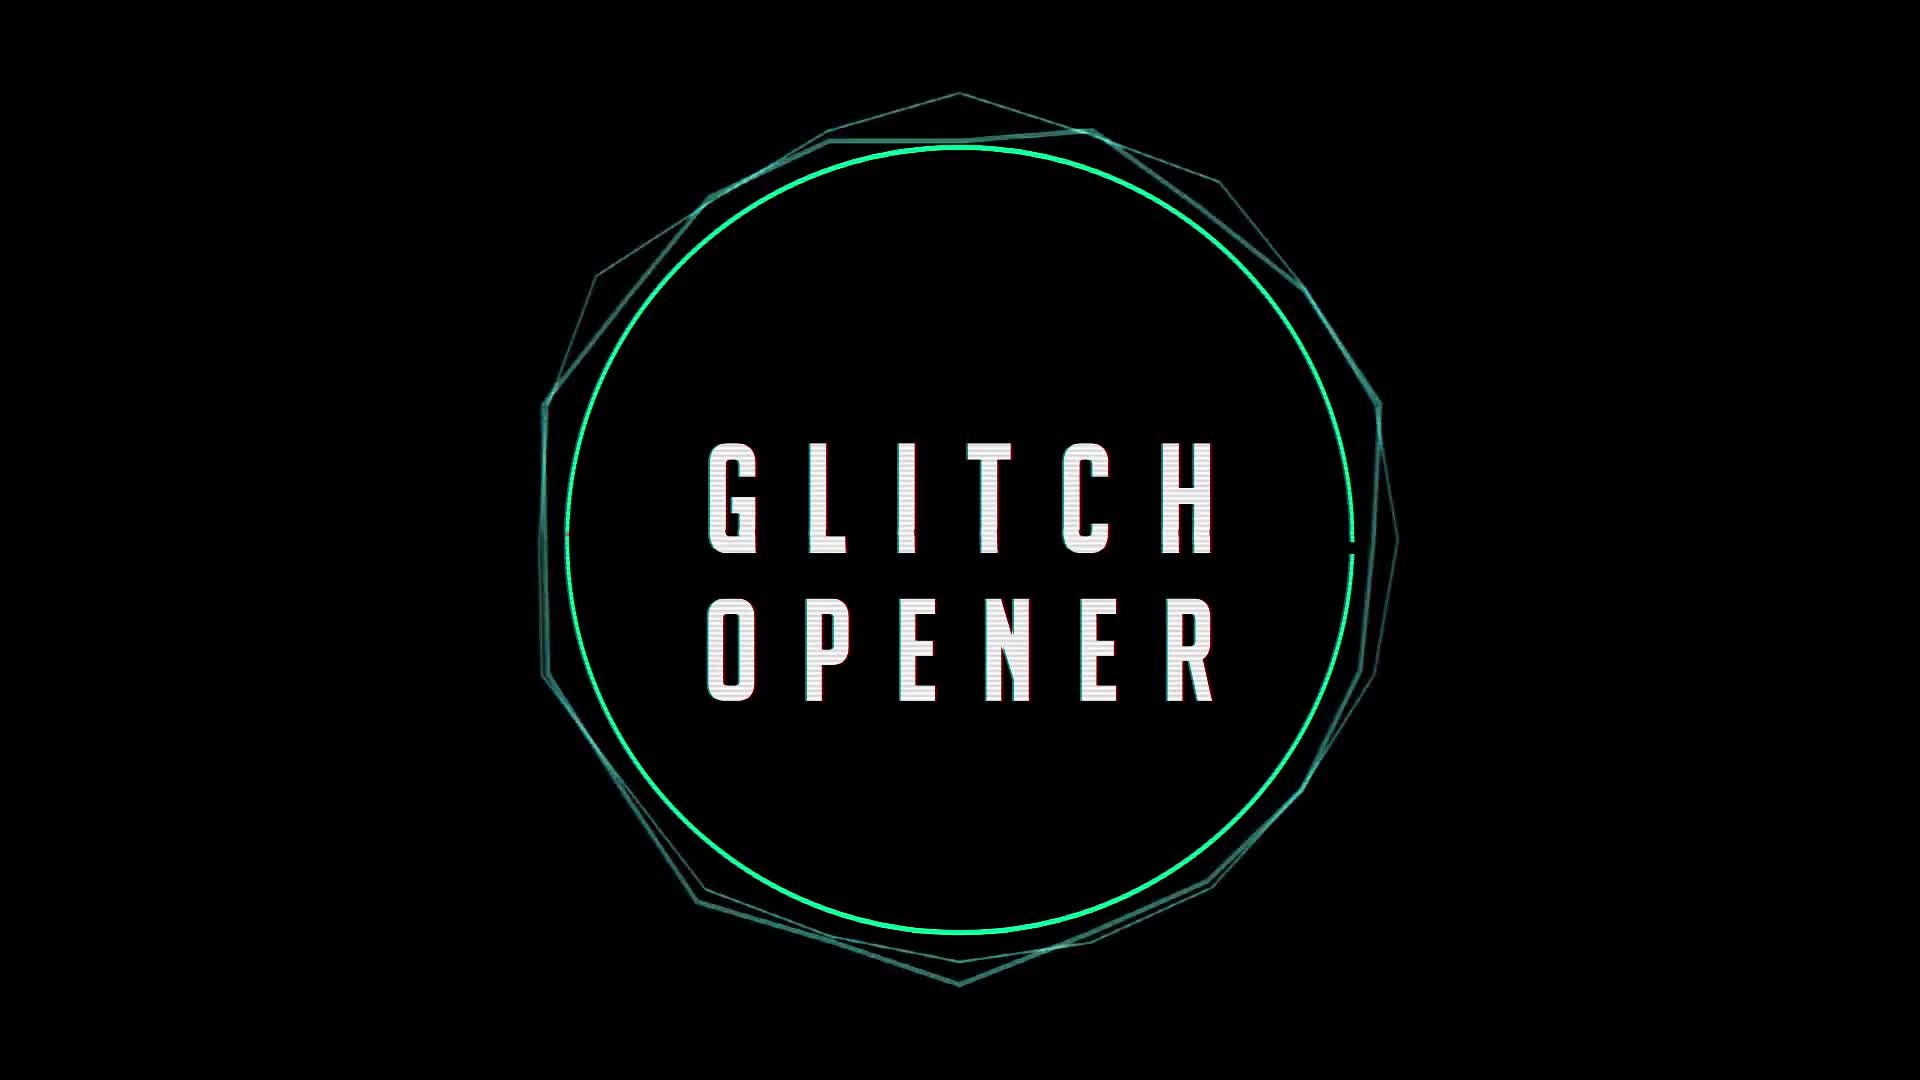 Glitch Opener - Download Videohive 15355000